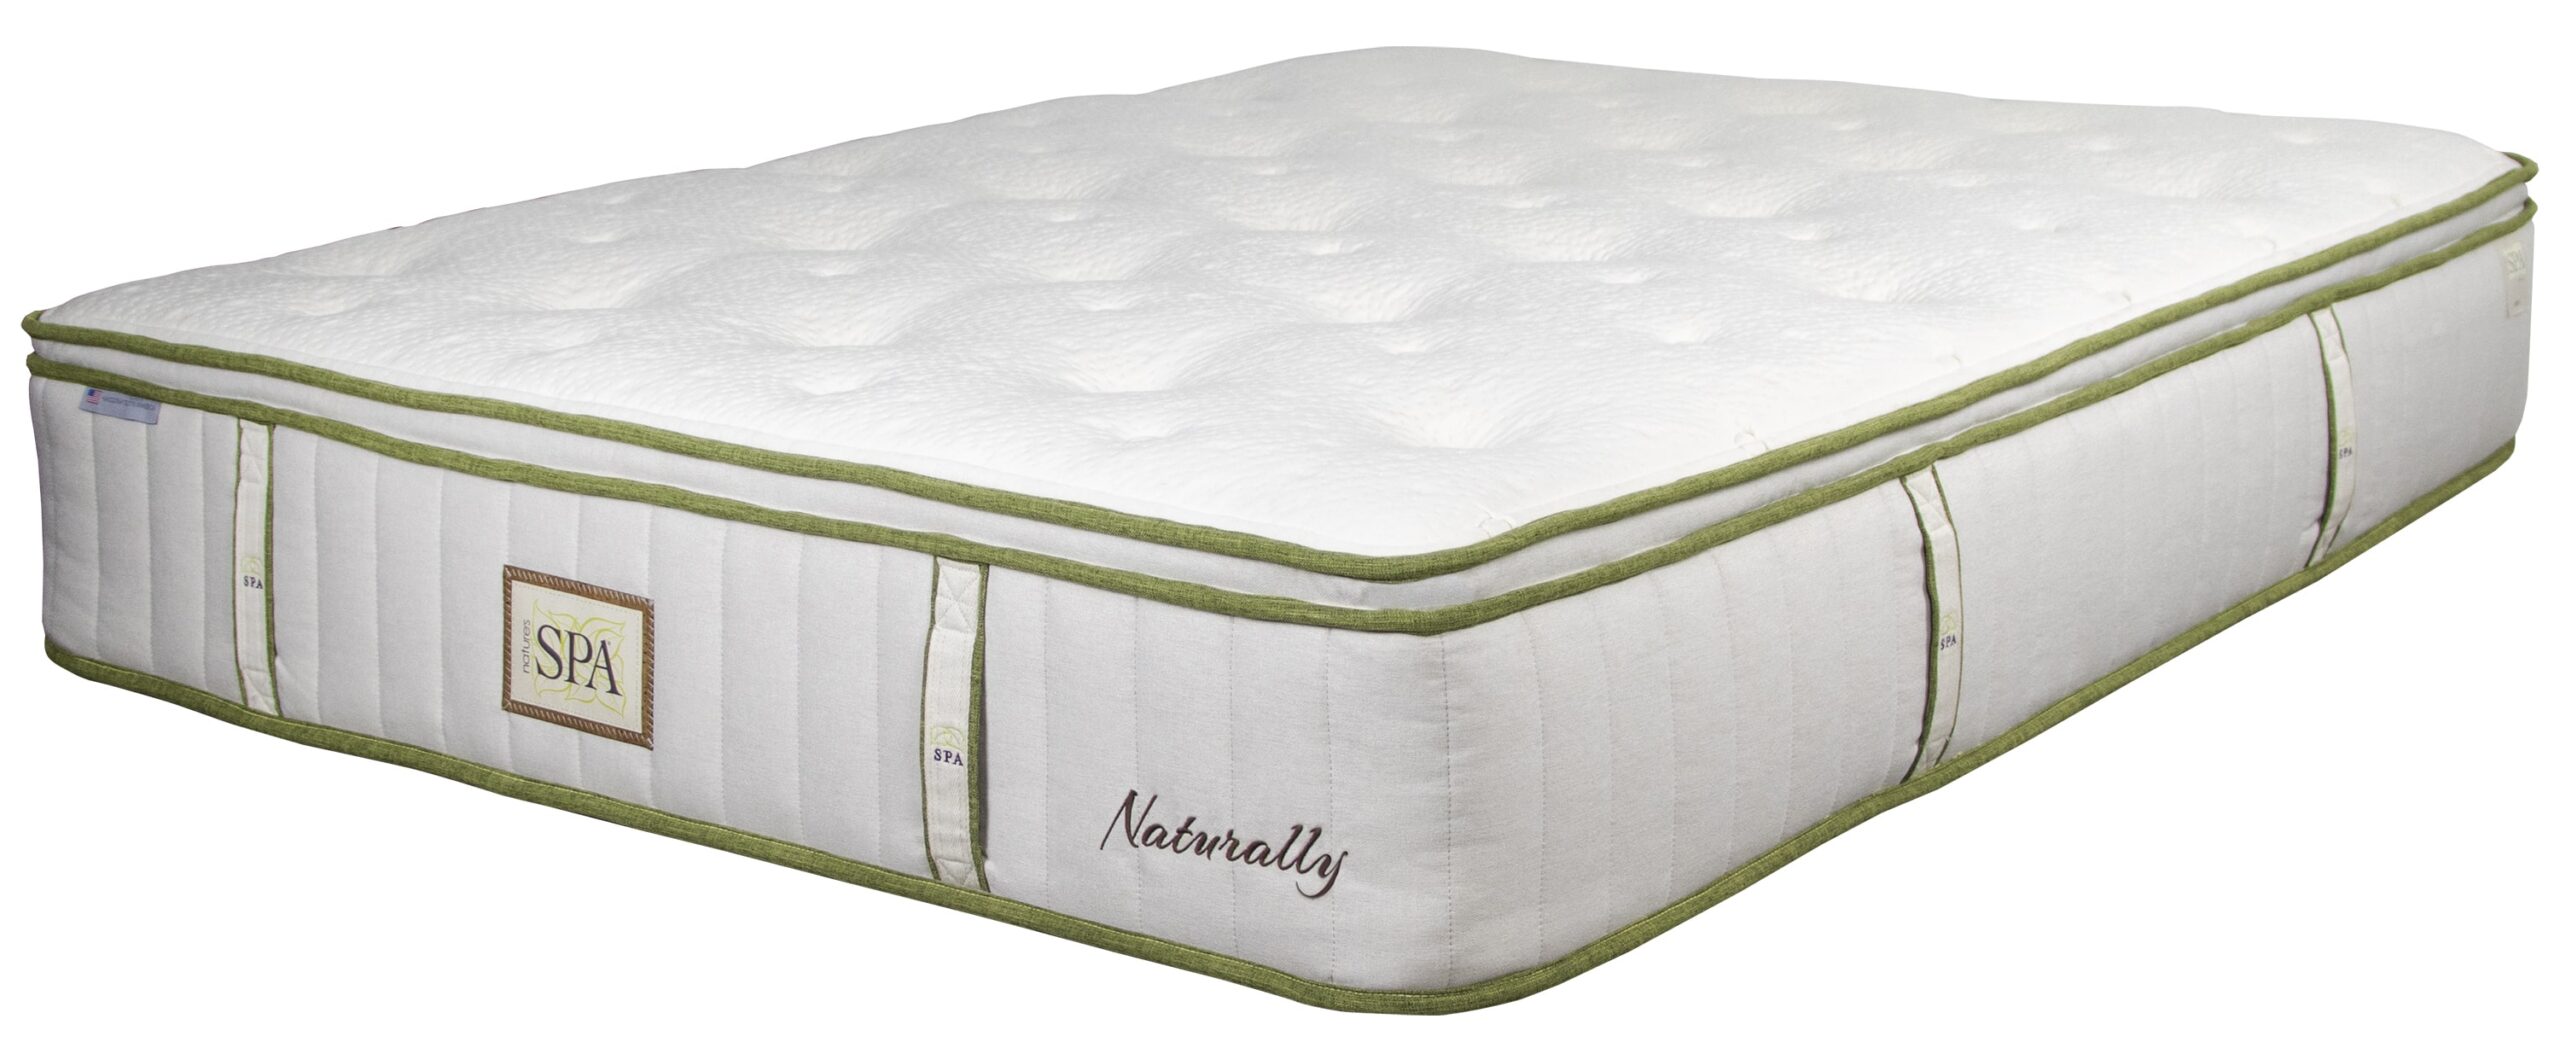 paramount nature's spa mattress reviews